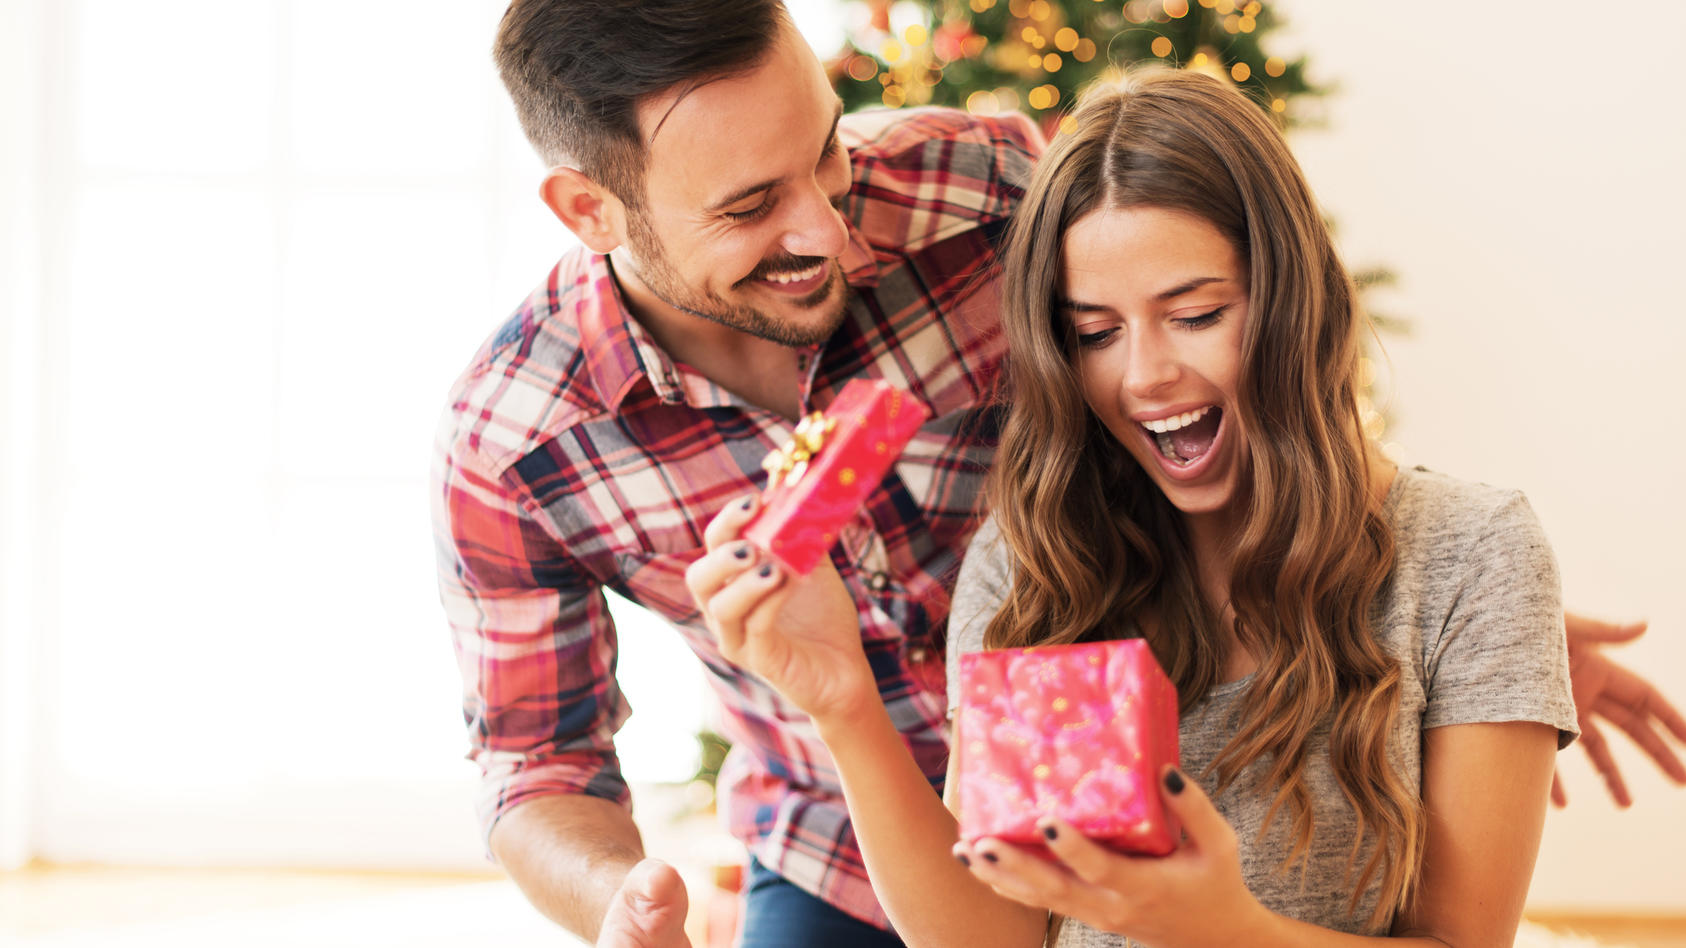 Frauen lieben Geschenke - auch an Weihnachten